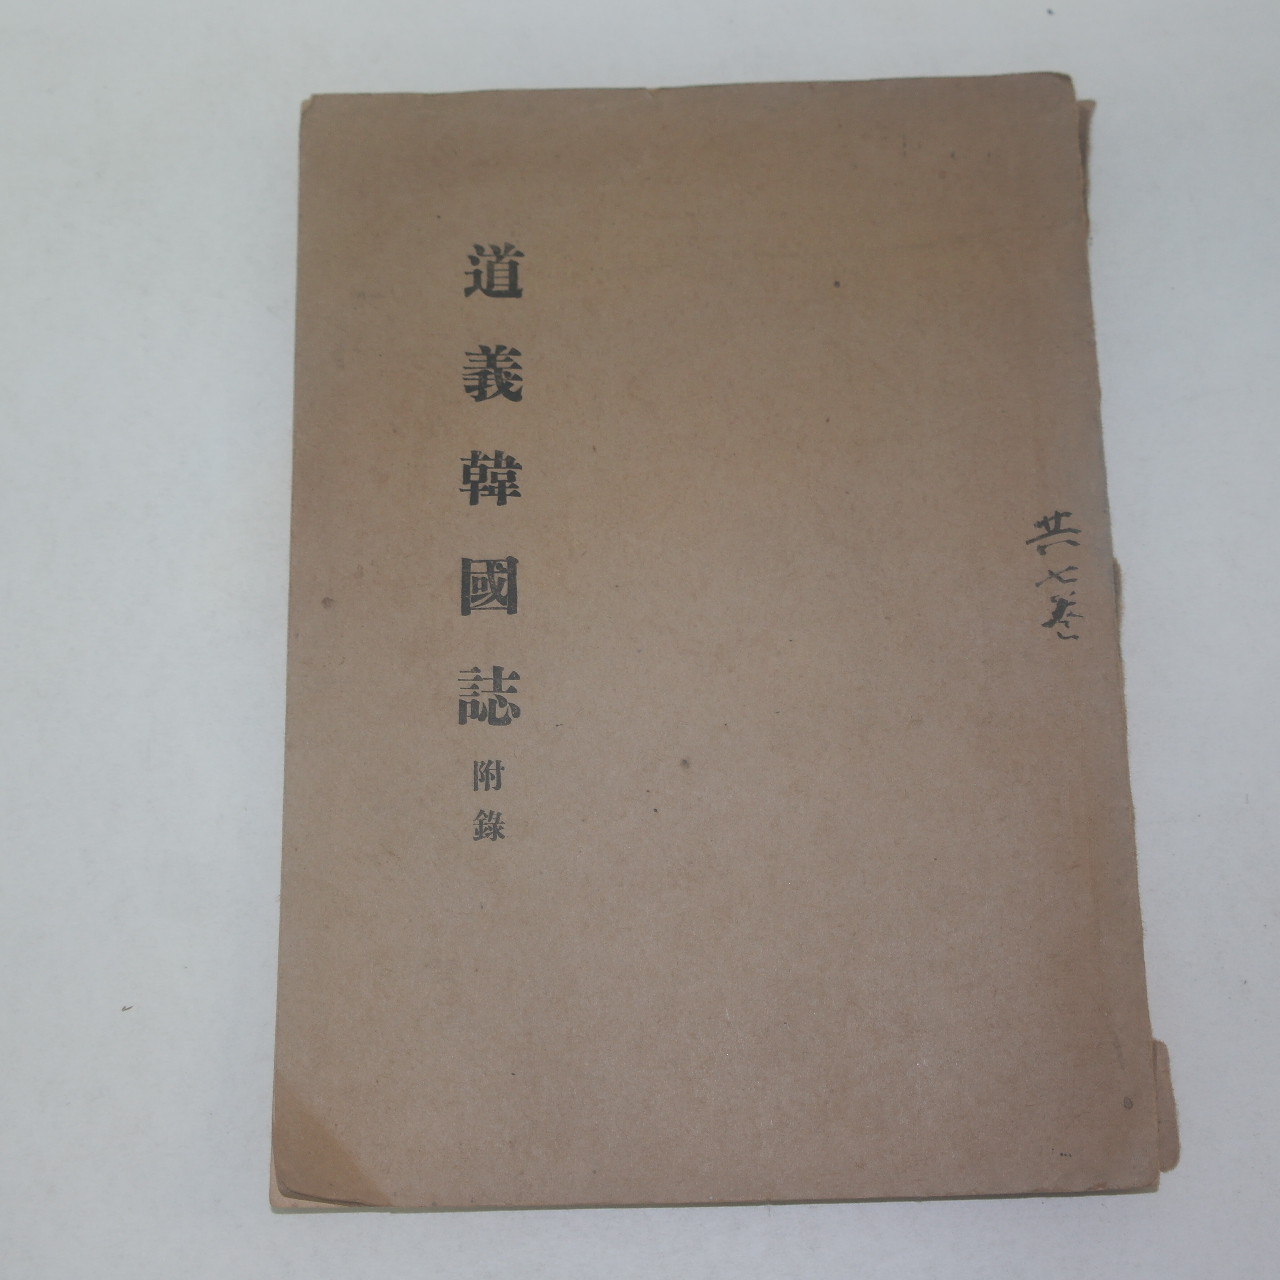 1963년간행 도의한국지(道義韓國誌)부록 1책